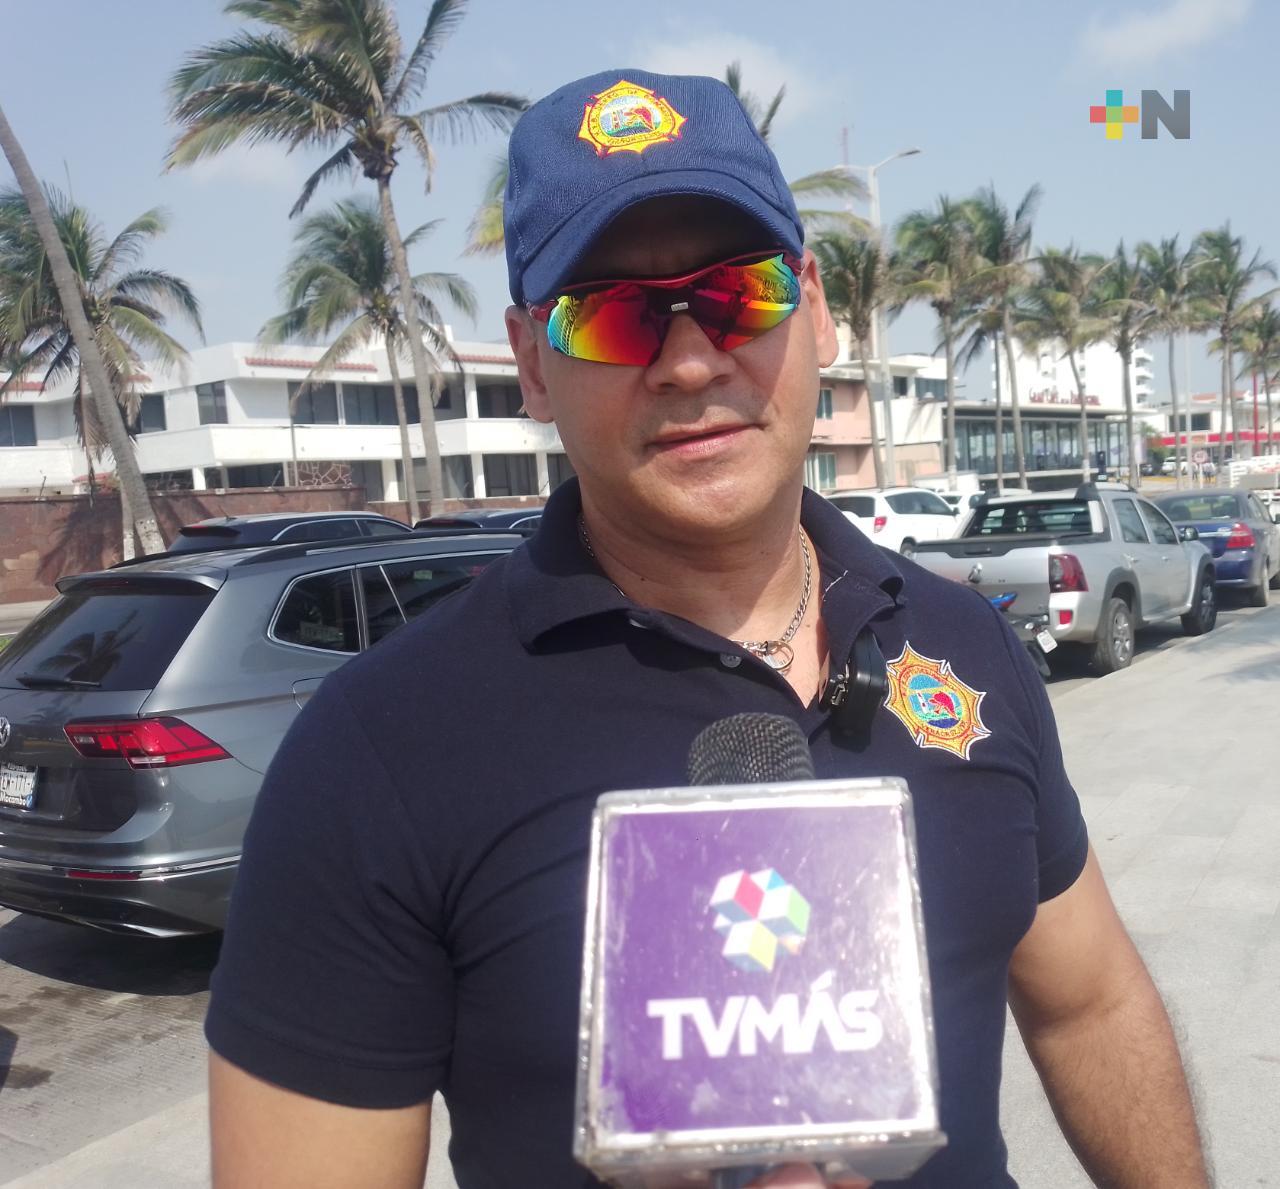 Protección Civil municipal de Veracruz localiza a menor perdido en playa